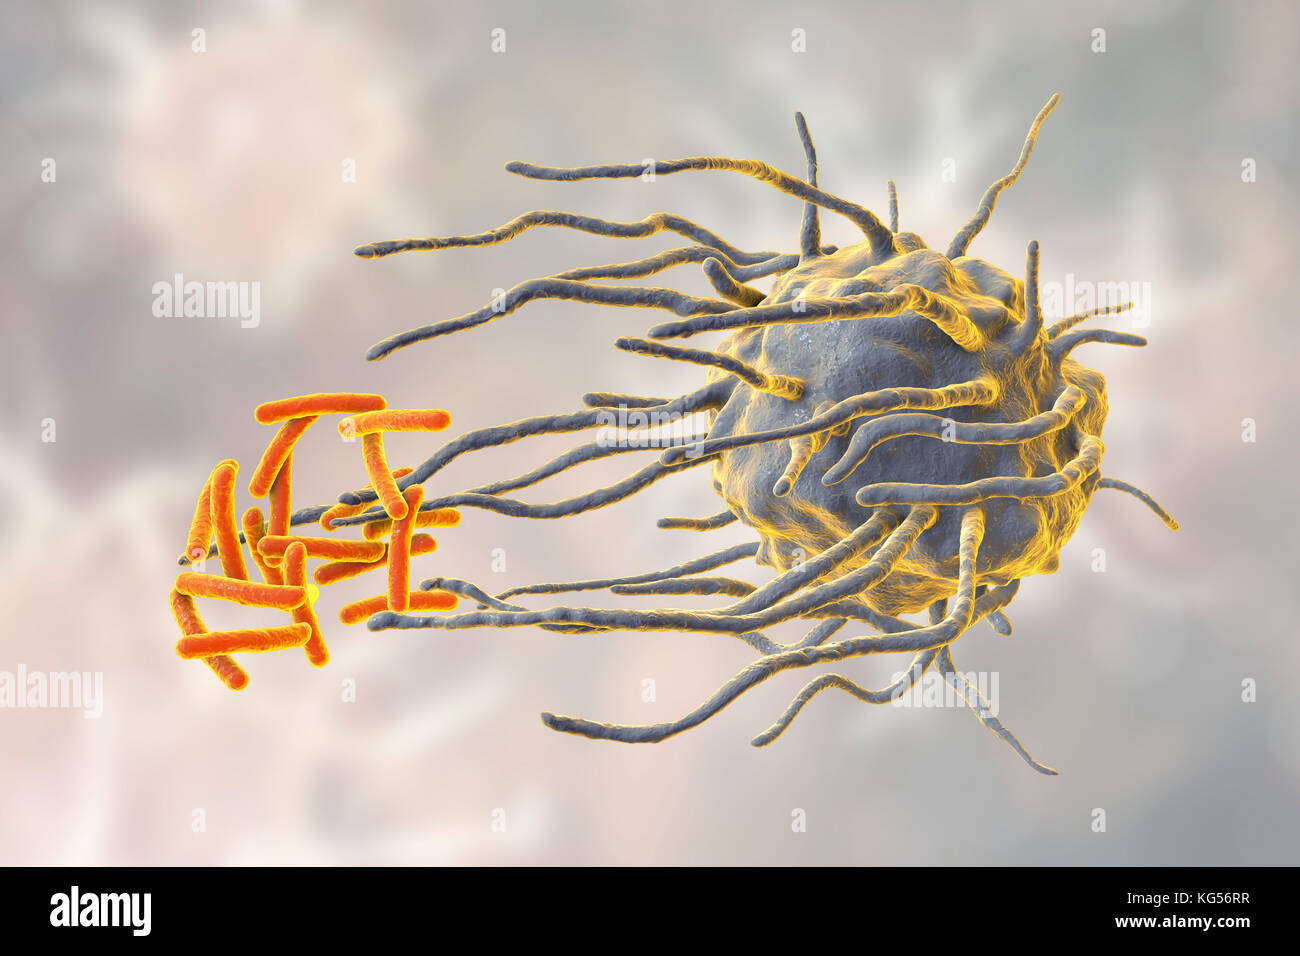 Makrophage engulfing TB-Bakterien. Computer Abbildung: der Makrophagen weißen Blutkörperchen (blau) engulfing Tuberkulose (Mycobacterium tuberculosis) Bakterien (orange). Dieser Prozess wird als phagozytose. Makrophagen sind Zellen des Immunsystems des Körpers. Sie phagocytose und zerstören Krankheitserreger, tote Zellen und zelluläre Ablagerungen. Stockfoto